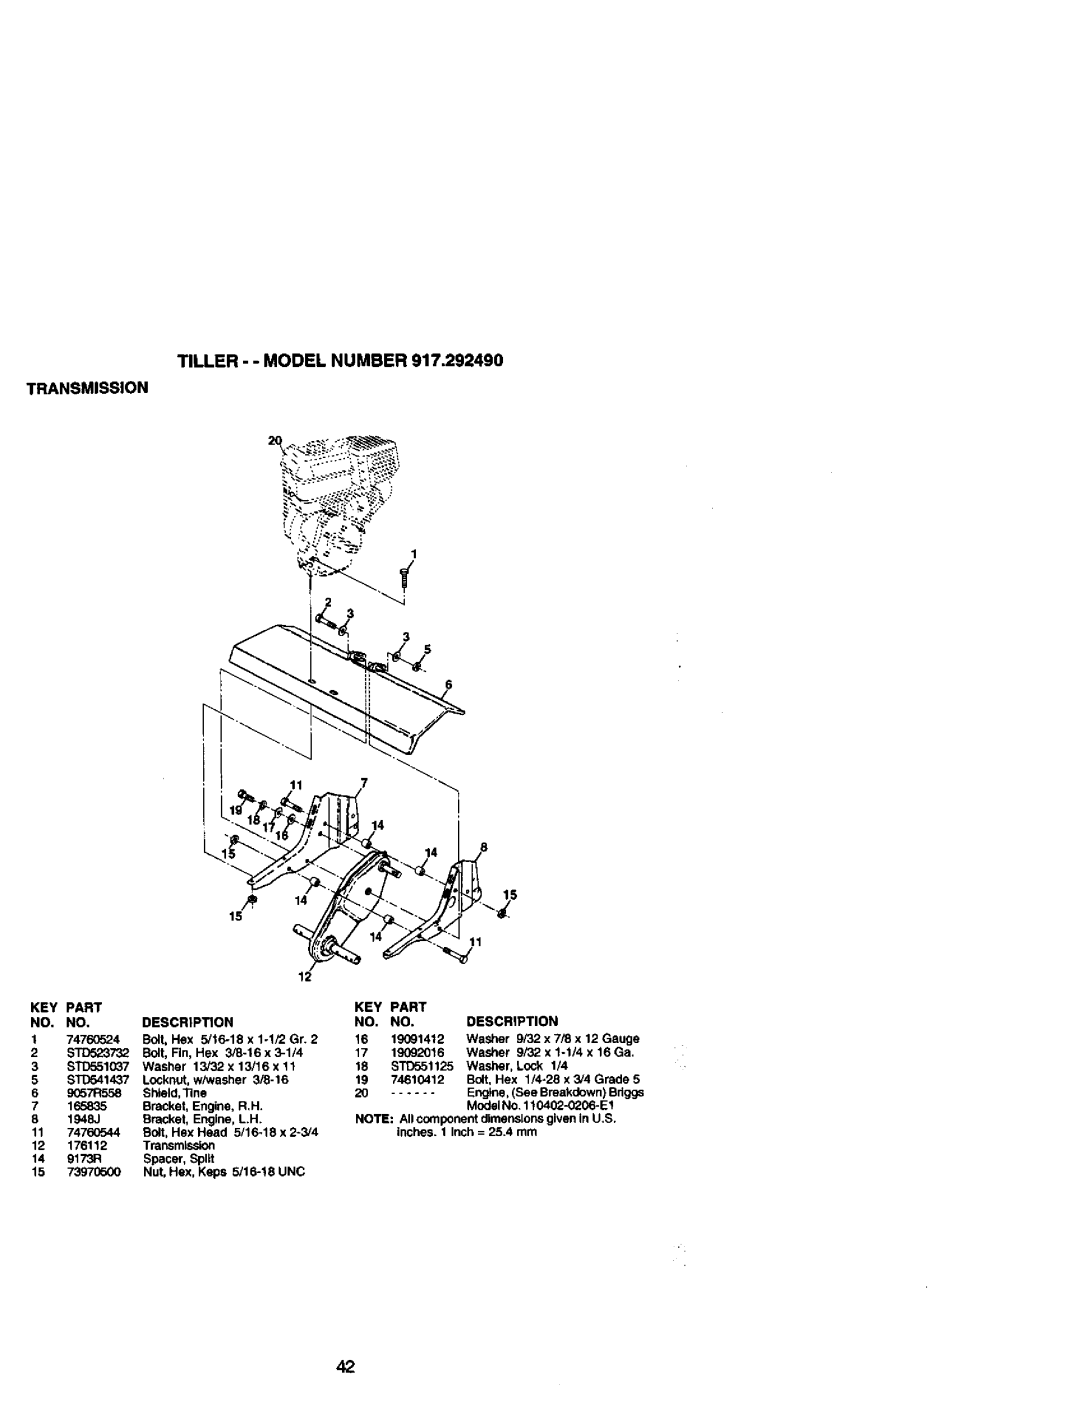 Craftsman 917.29249 owner manual Tiller - - Model Number Transmission 